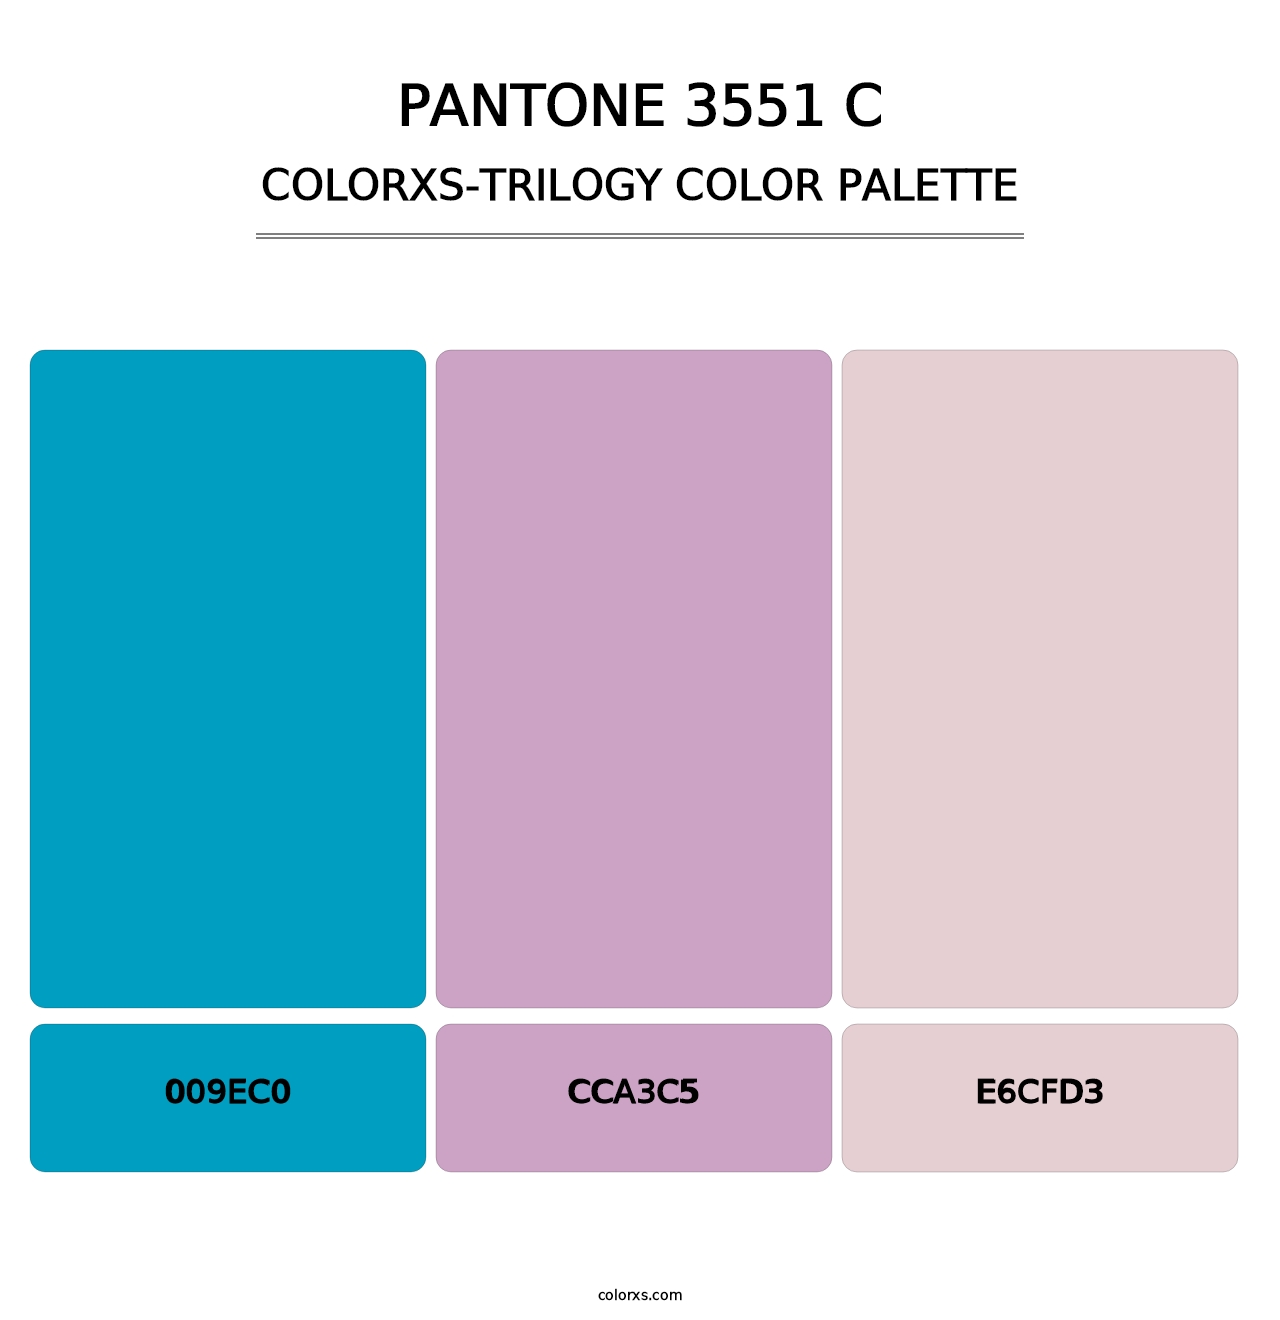 PANTONE 3551 C - Colorxs Trilogy Palette